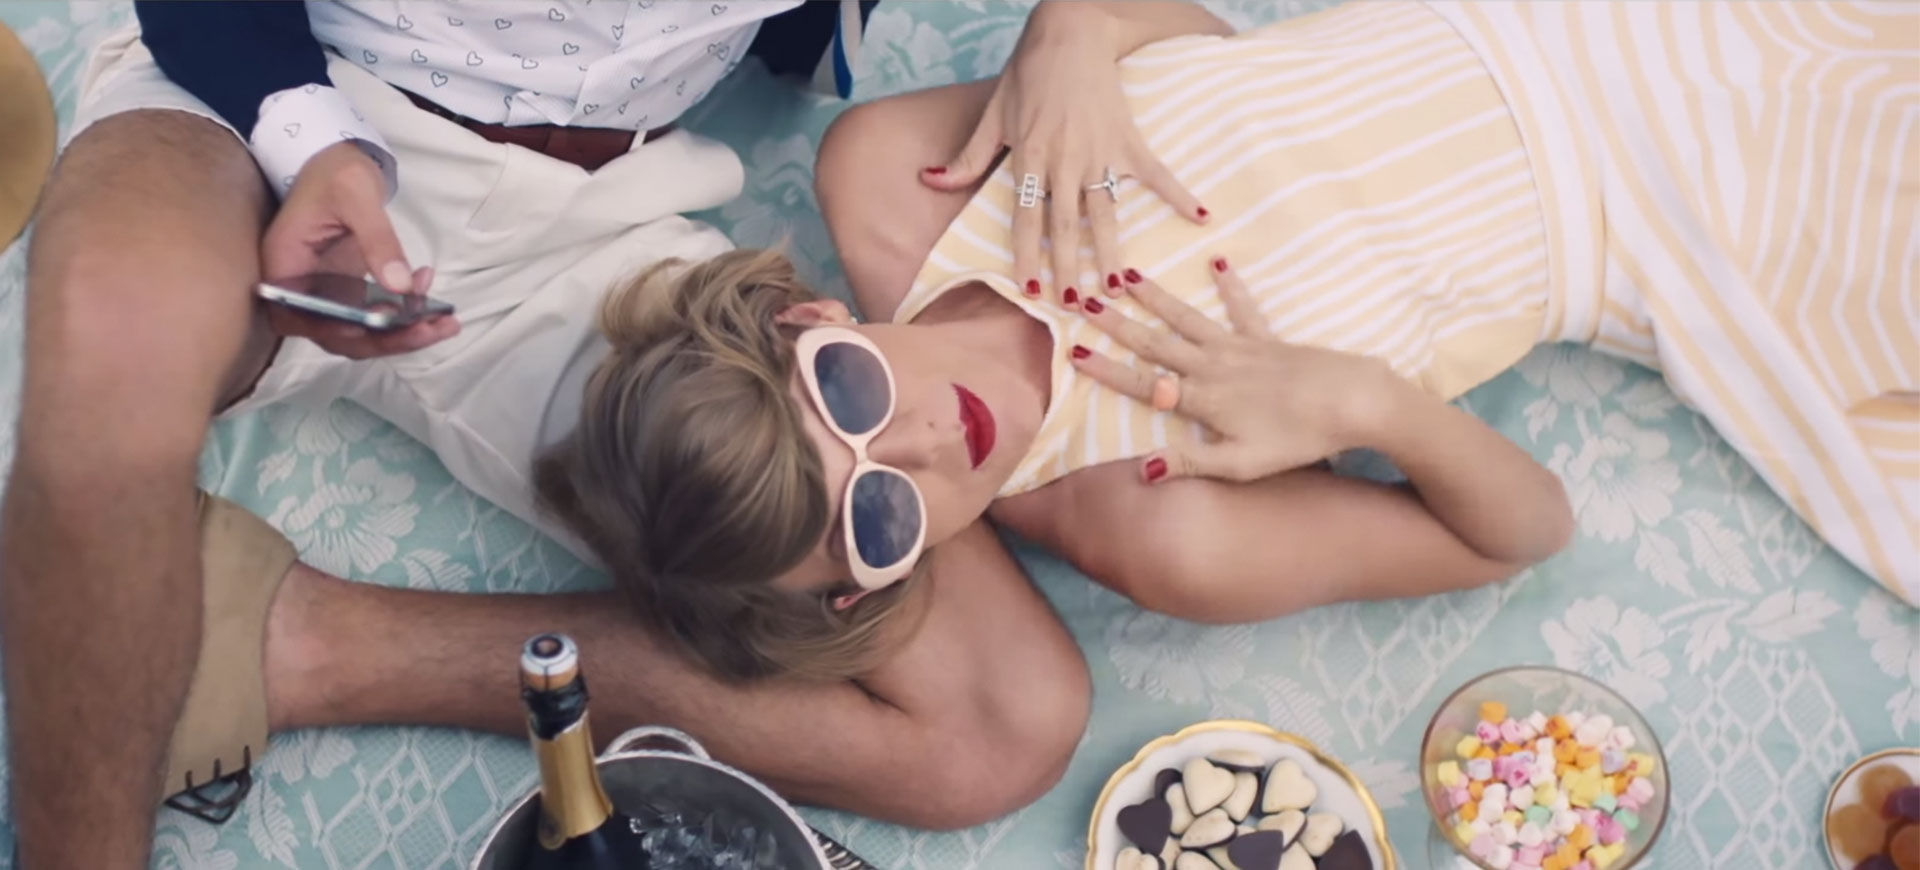 Taylor Swift skrev låt till Calvin Harris i hemlighet - varför?